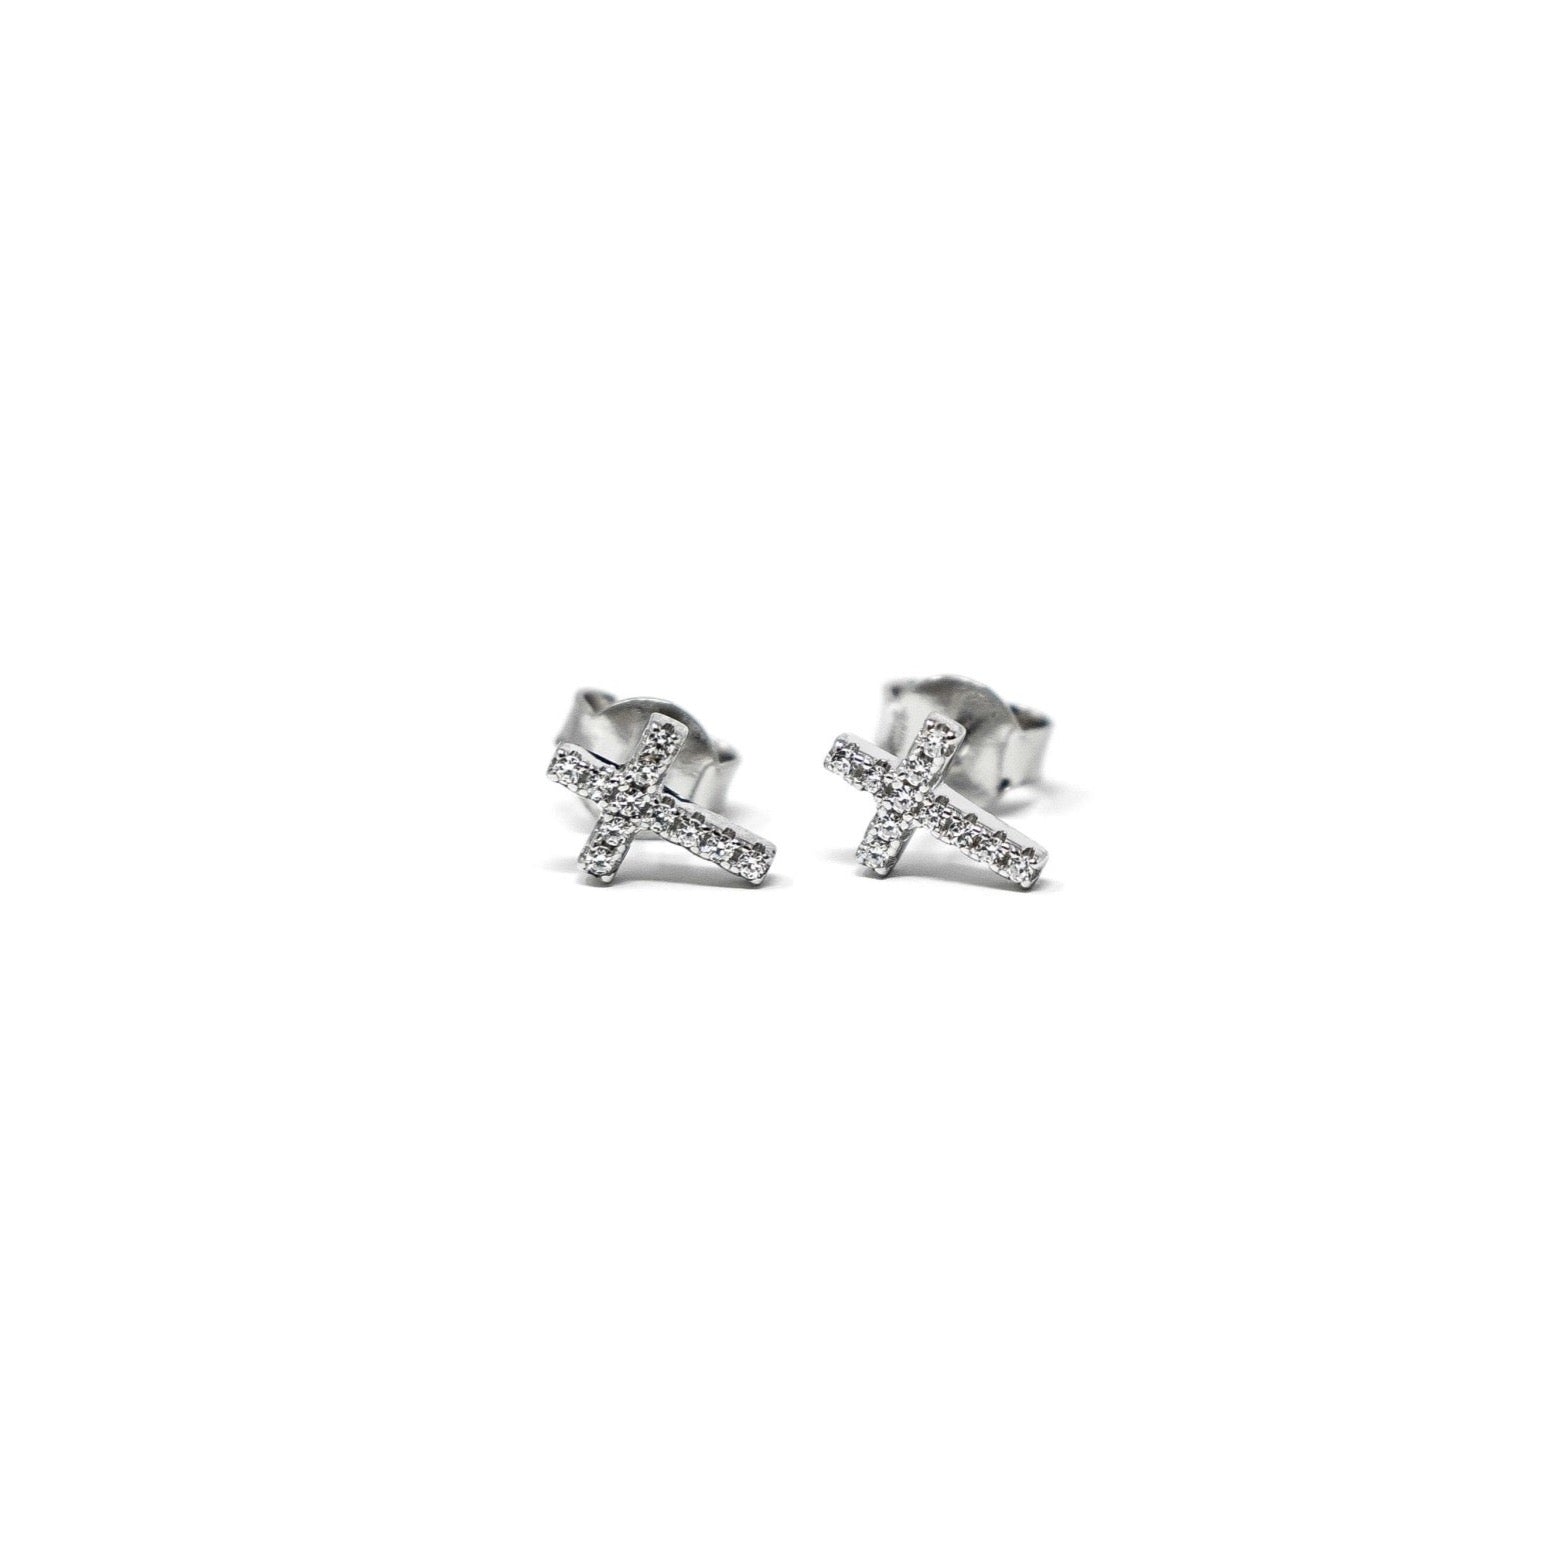 Rockabye Baby Cross Earrings with CZ Stones - Sterling Silver